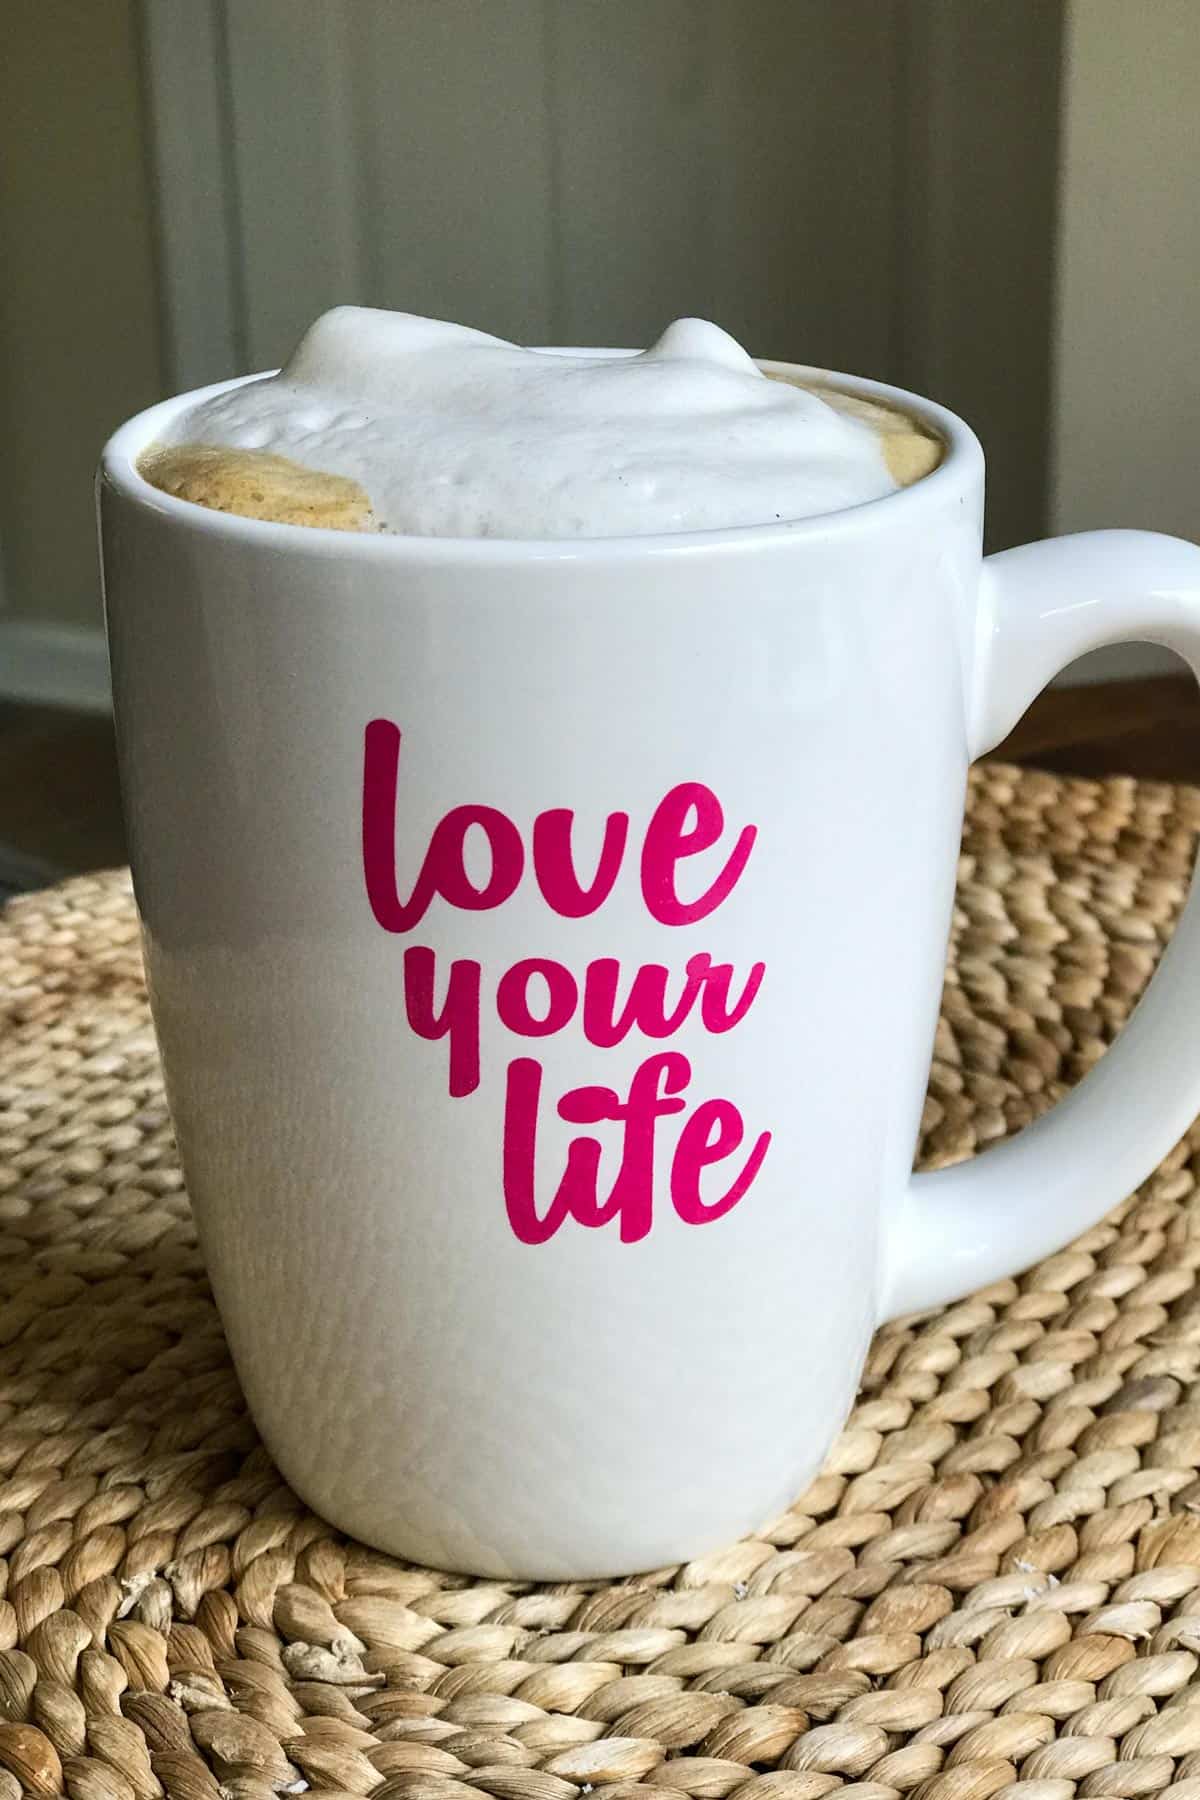 Cappuccino tanpa tenusu dalam cawan yang tertulis "sayangi nyawa awak"